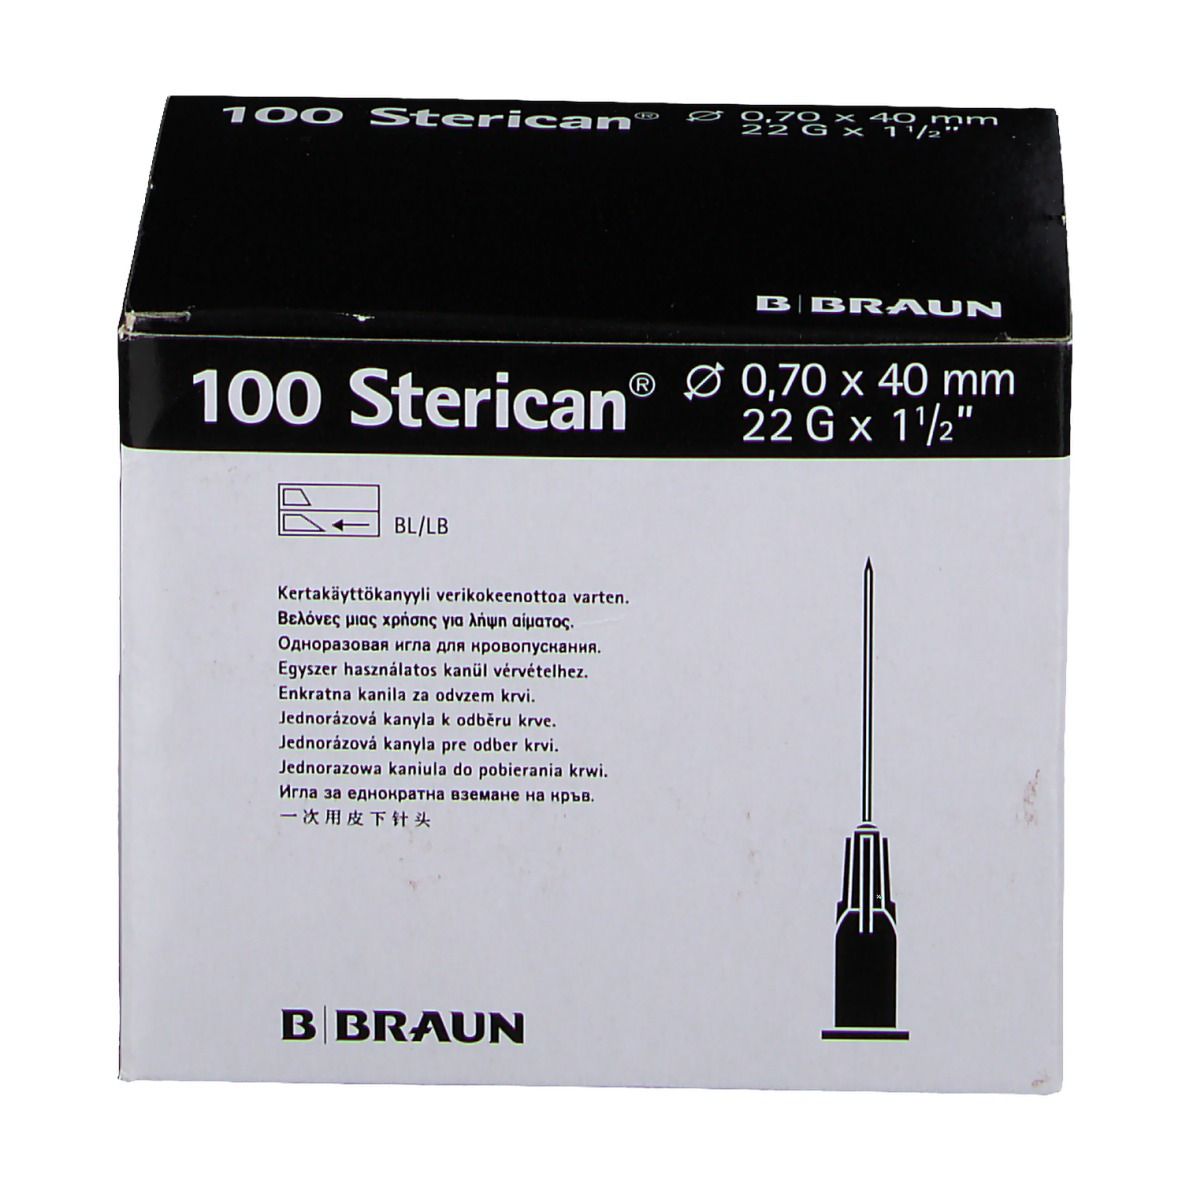 Sterican® zur Blutentnahme G22 x 1 1/2 Zoll 0,7 x 40 mm schwarz